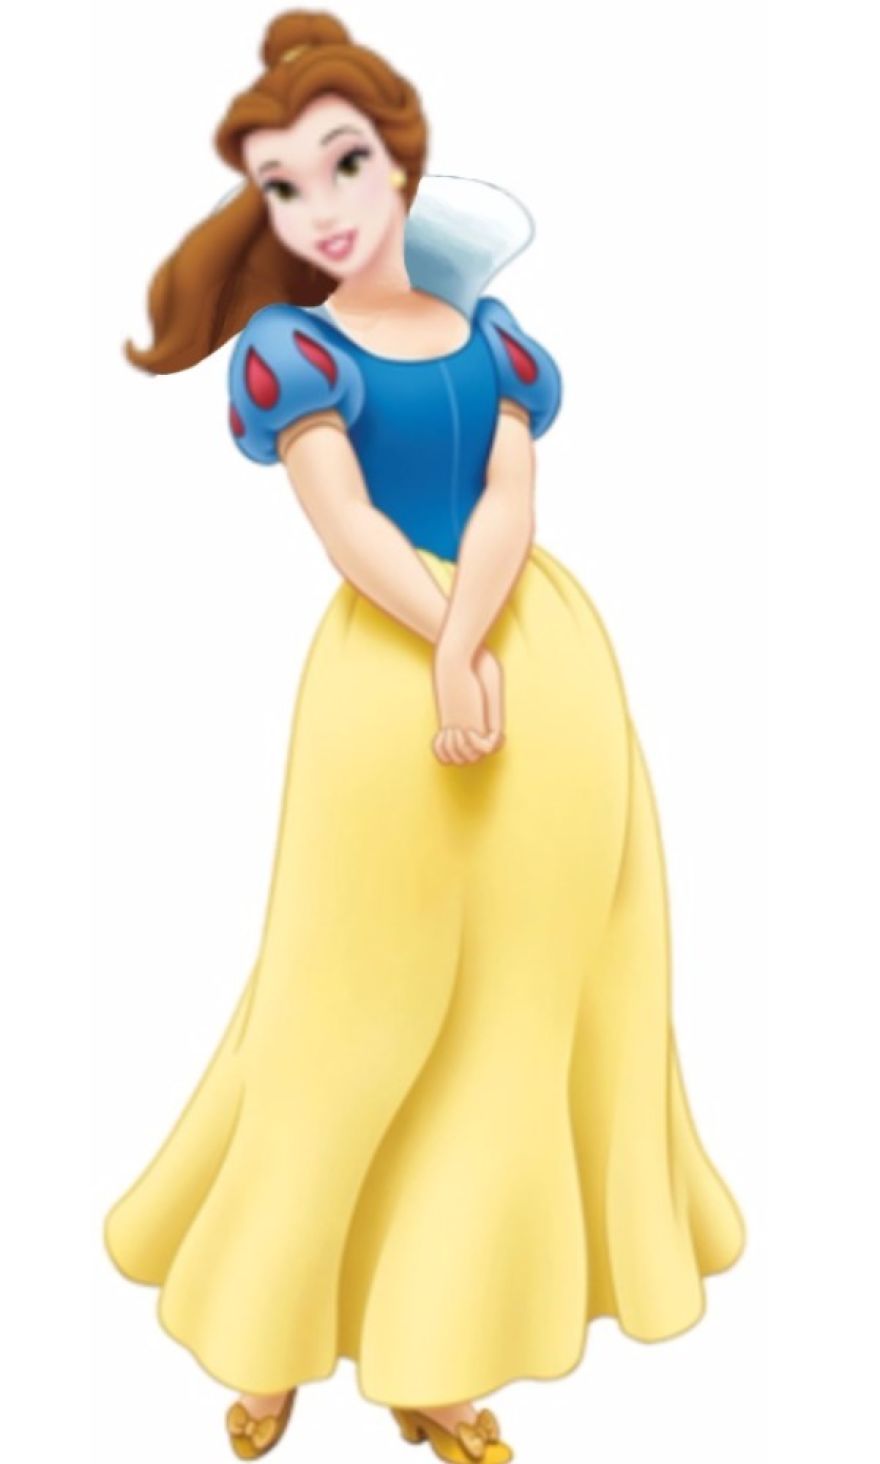 Belle in Snow White’s Dress